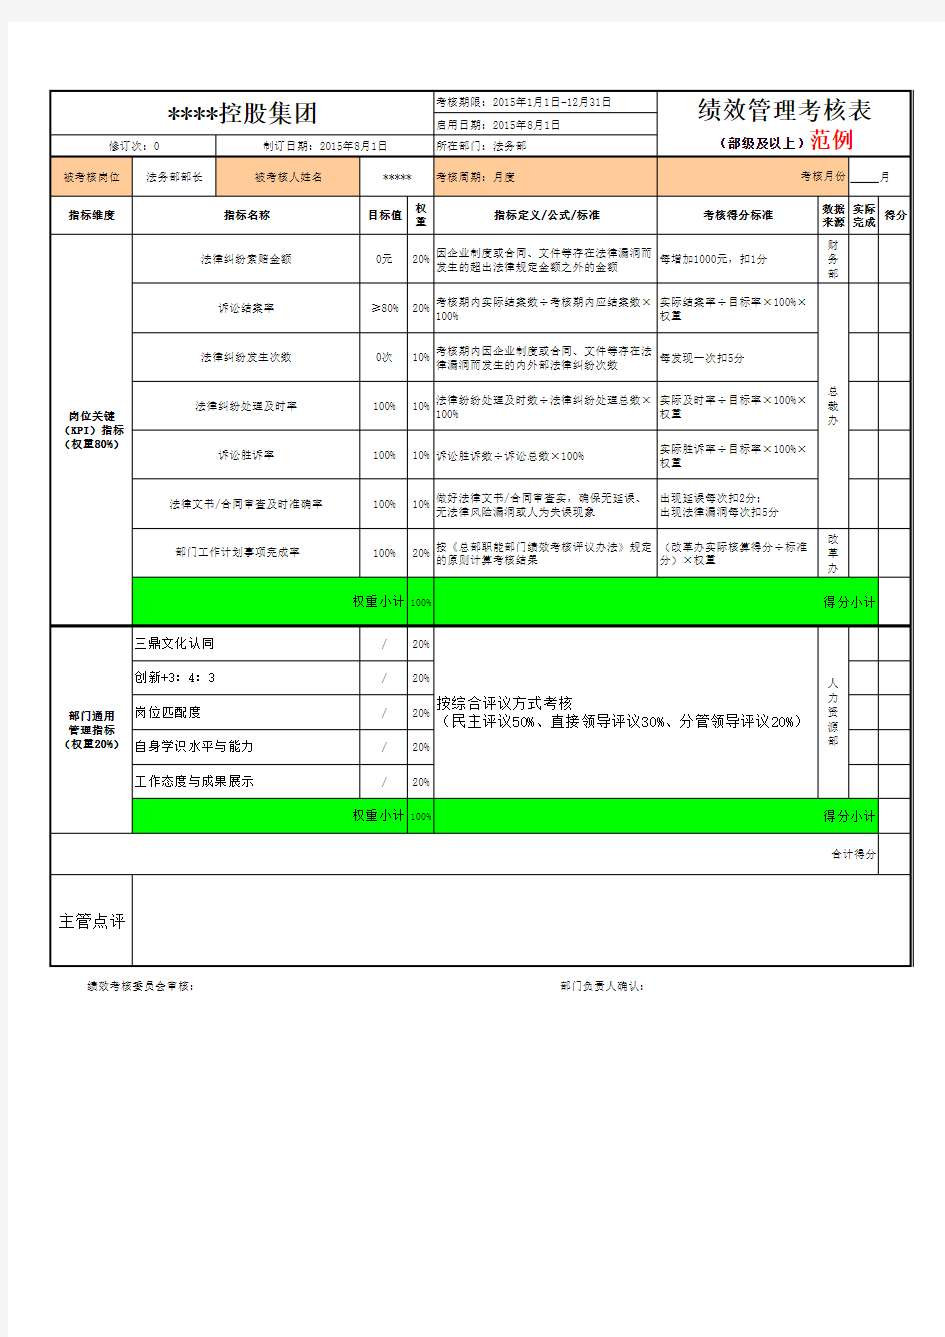 中国500强部门绩效管理考核表模板(2015年8月20日)